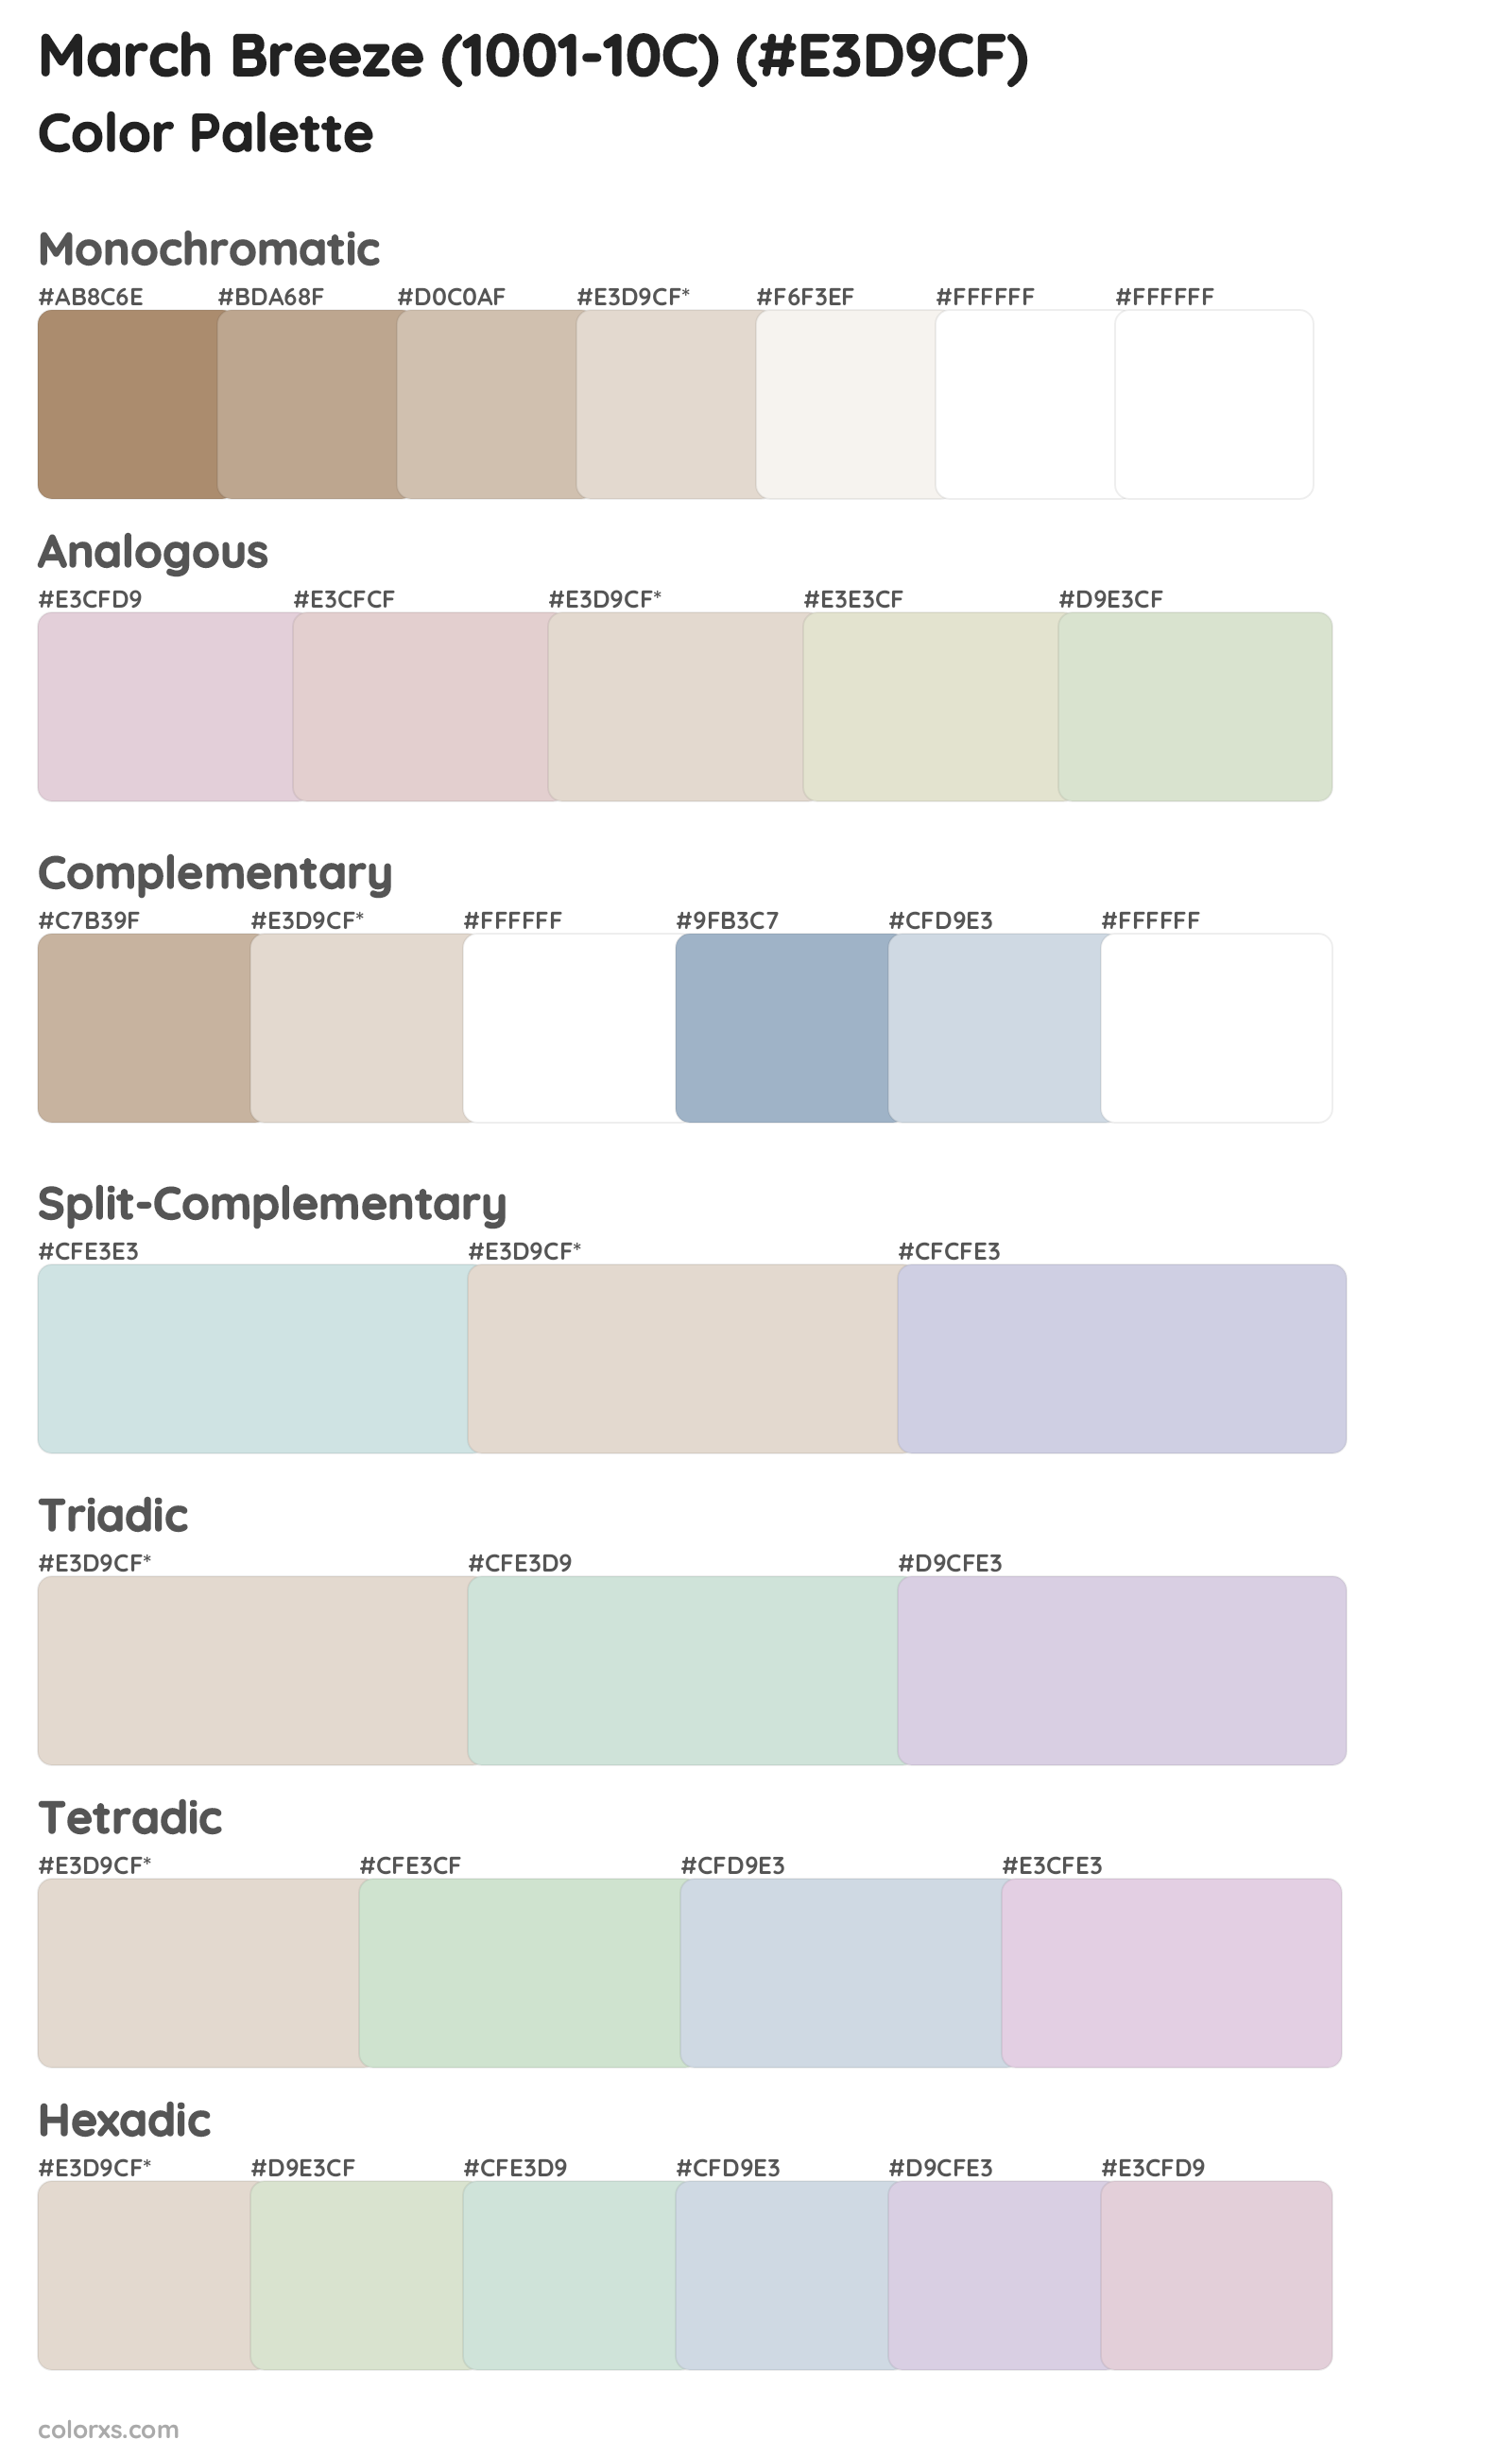 March Breeze (1001-10C) Color Scheme Palettes